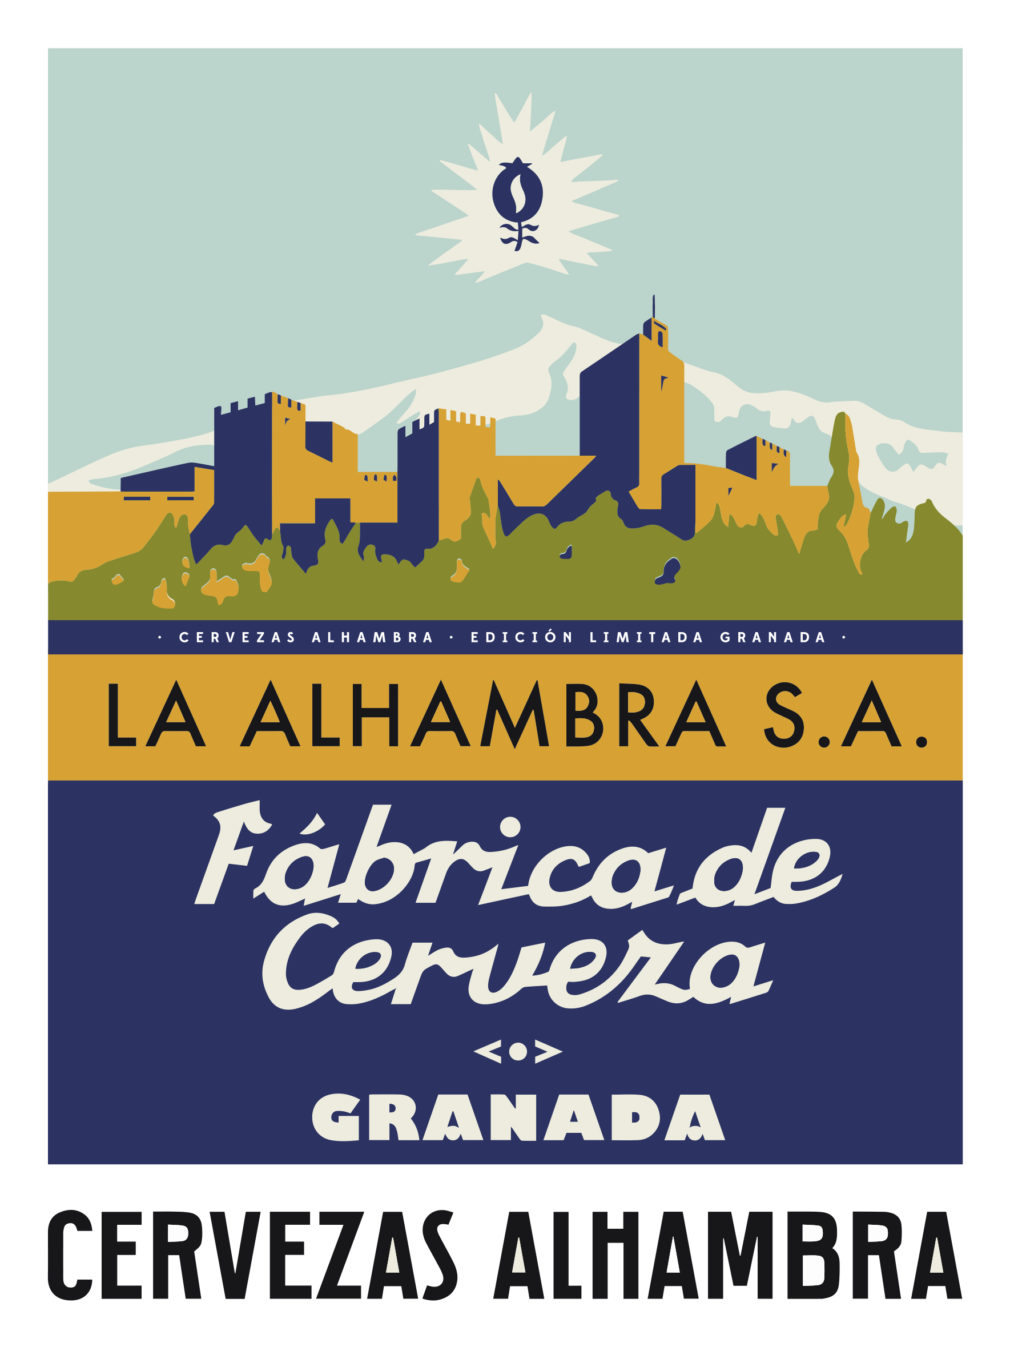 Cervezas Alhambra vintage